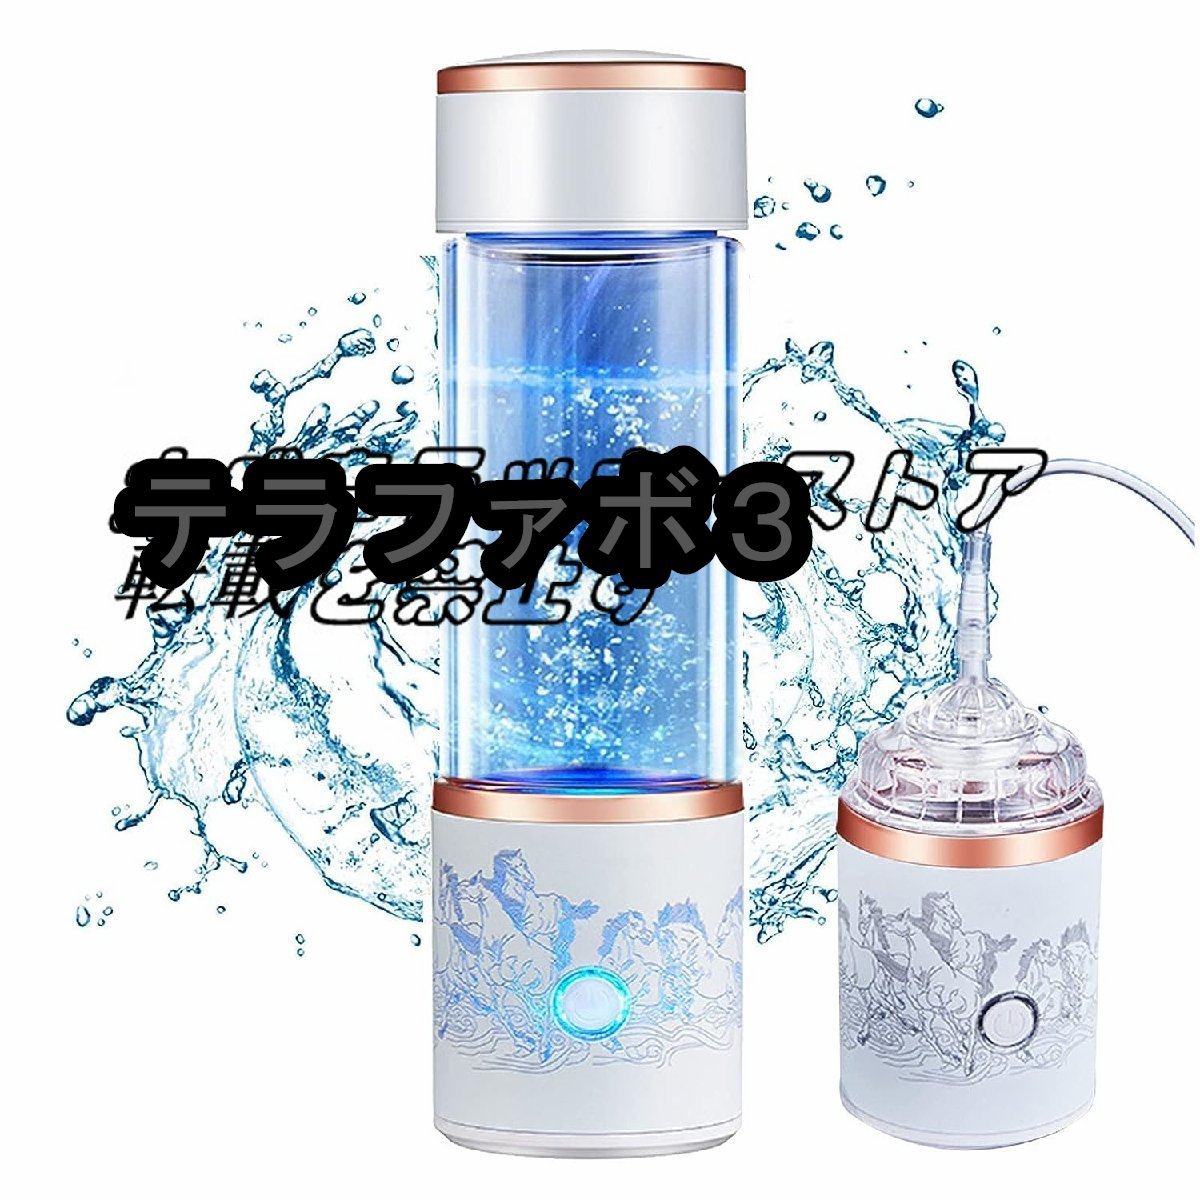 水素水生成器 超高濃度 水素水ボトル 5000PPB 一台三役 300ML 冷水/温水通用 ボトル式電解水機 飲める 美容 健康 携帯用_画像1